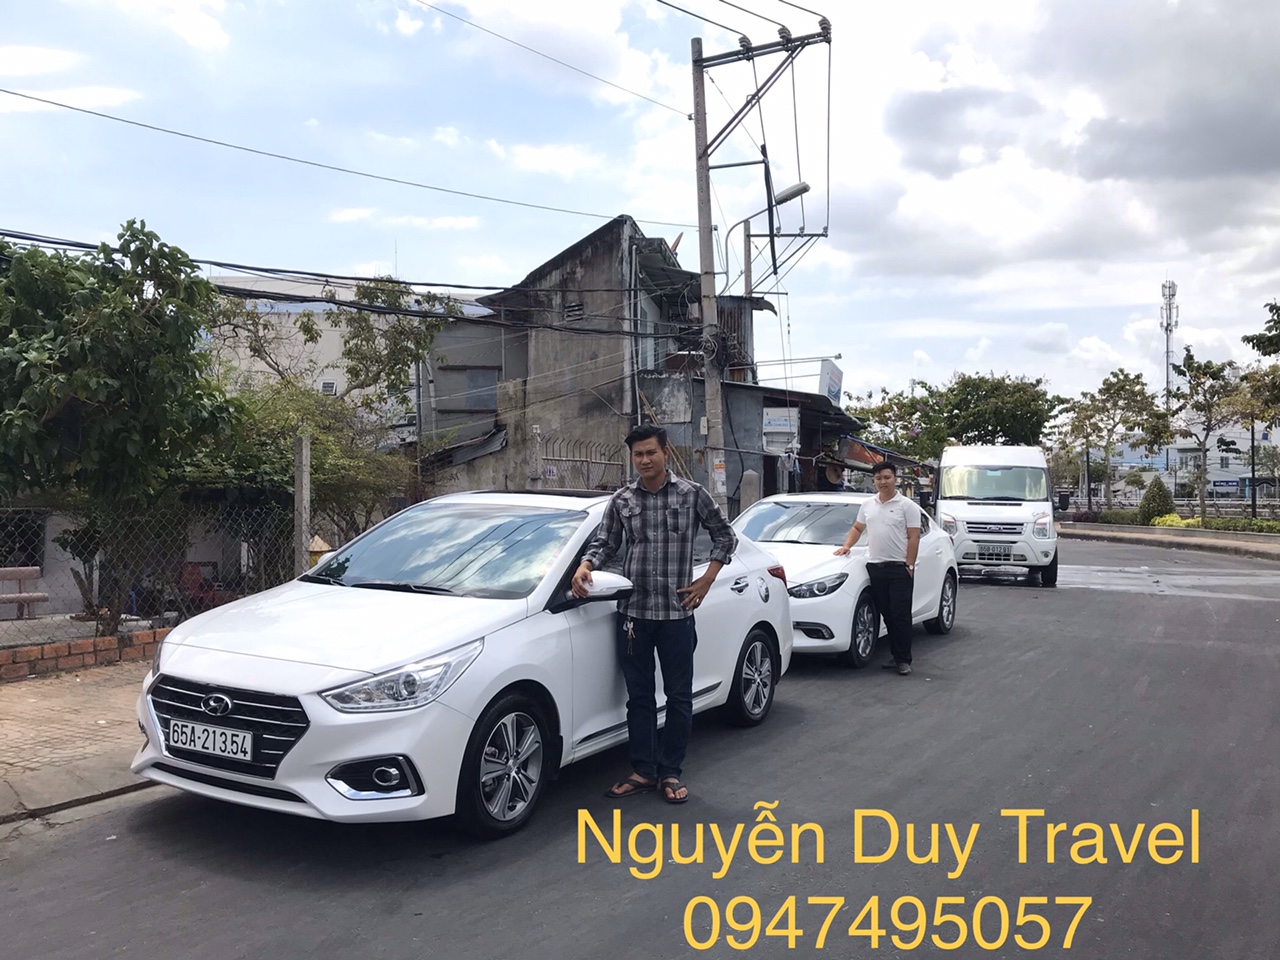 Thuê xe cần Thơ Sài Gòn - Nguyễn Duy Travel